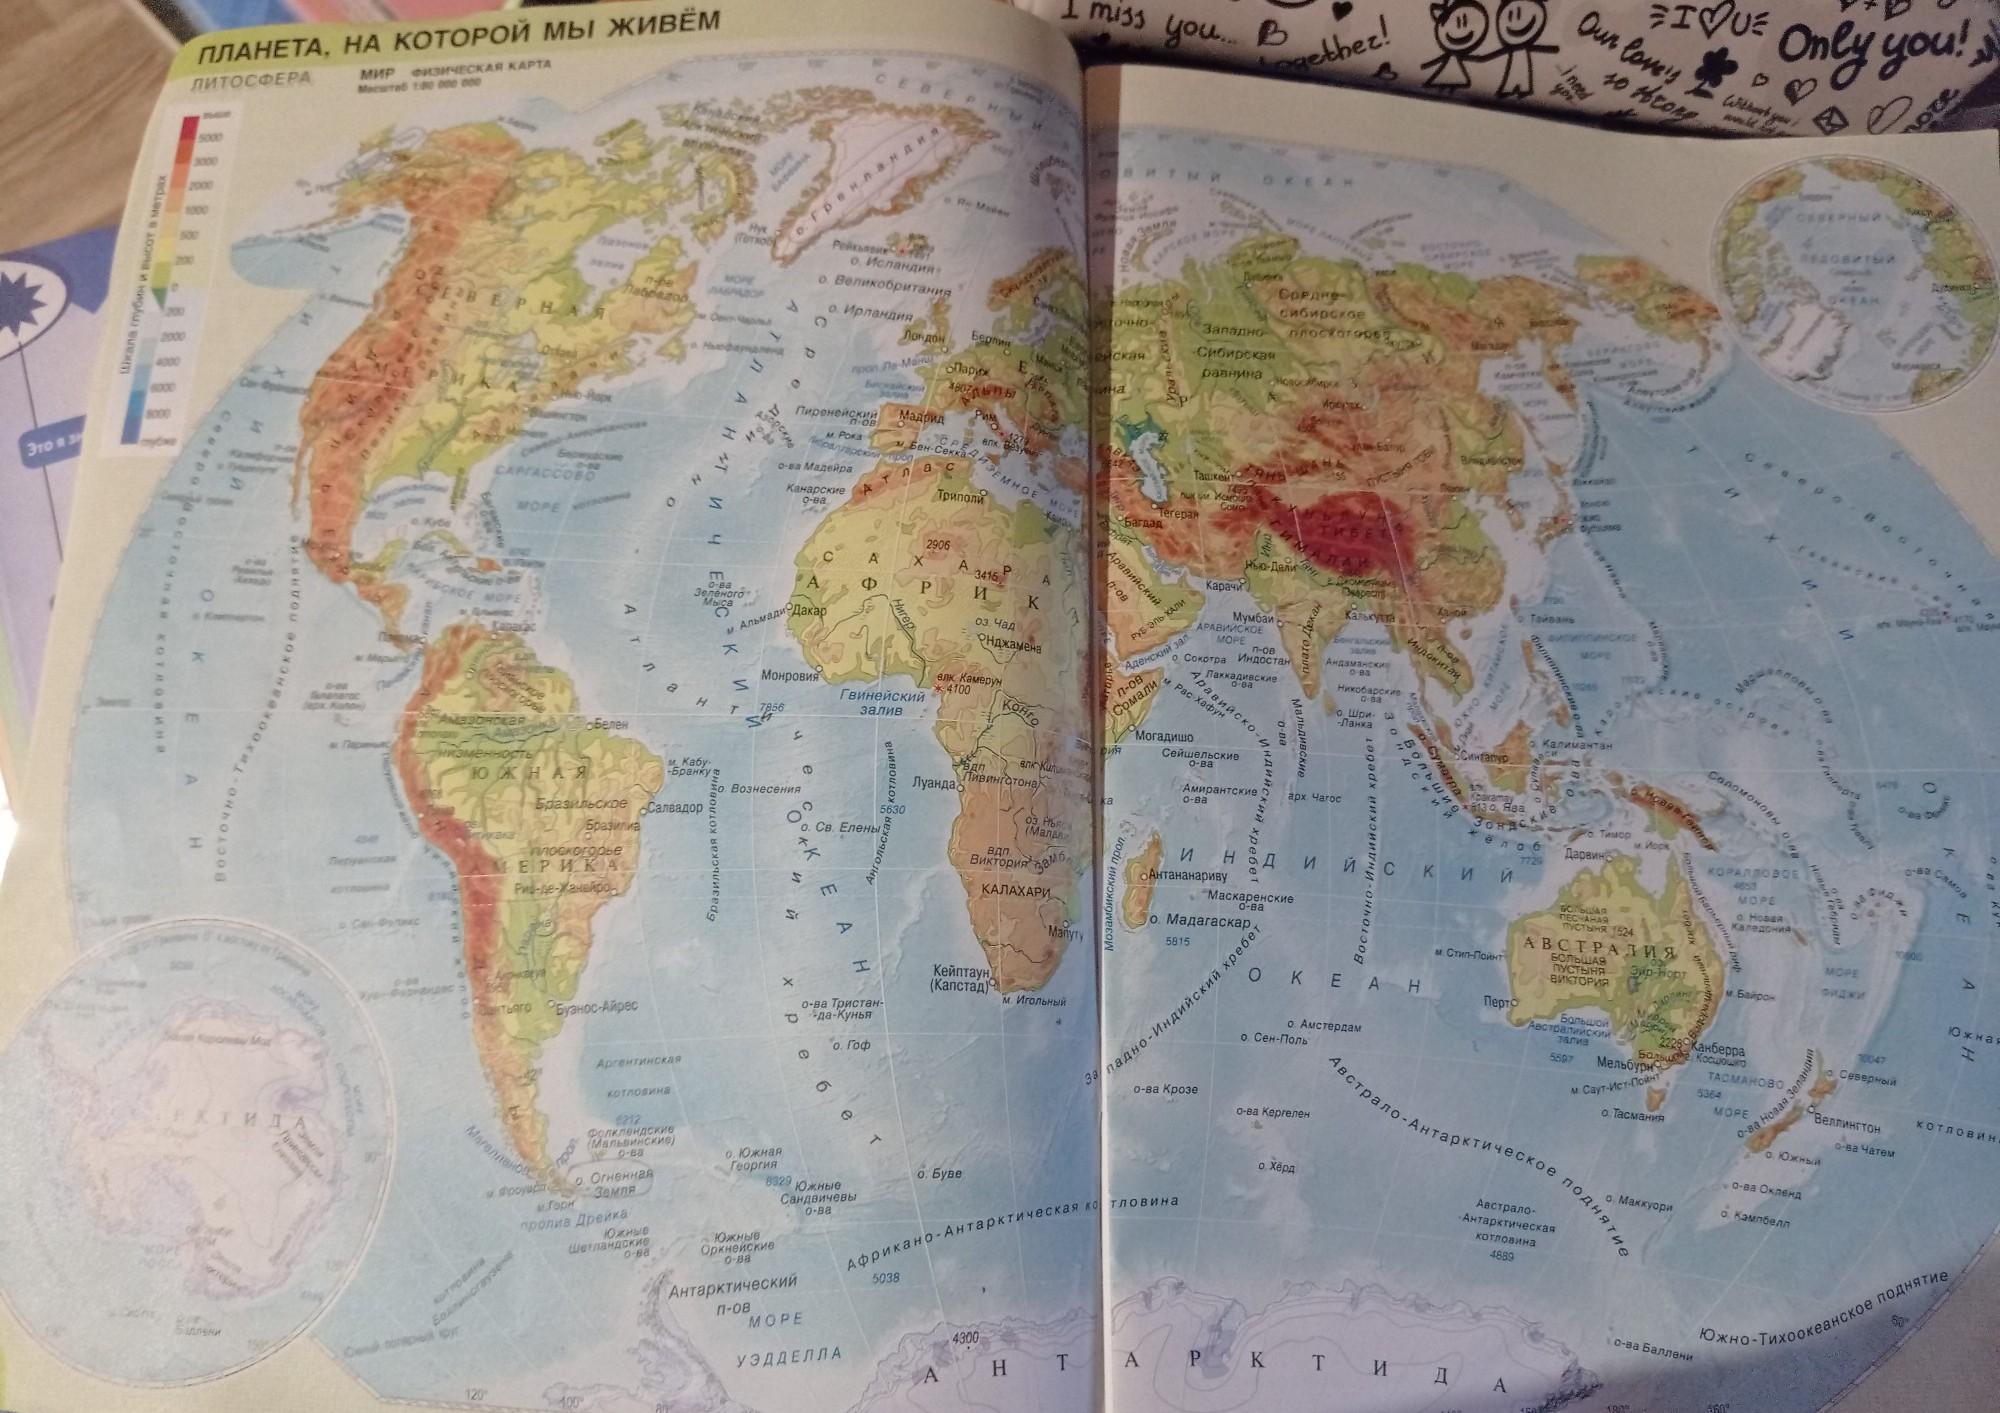 На каком материк 2 части света. Европа на каком материке. Европа часть света на карте. На каком материке расположены 2 части света. На каком материке расположены 2 части света Европа и Азия.